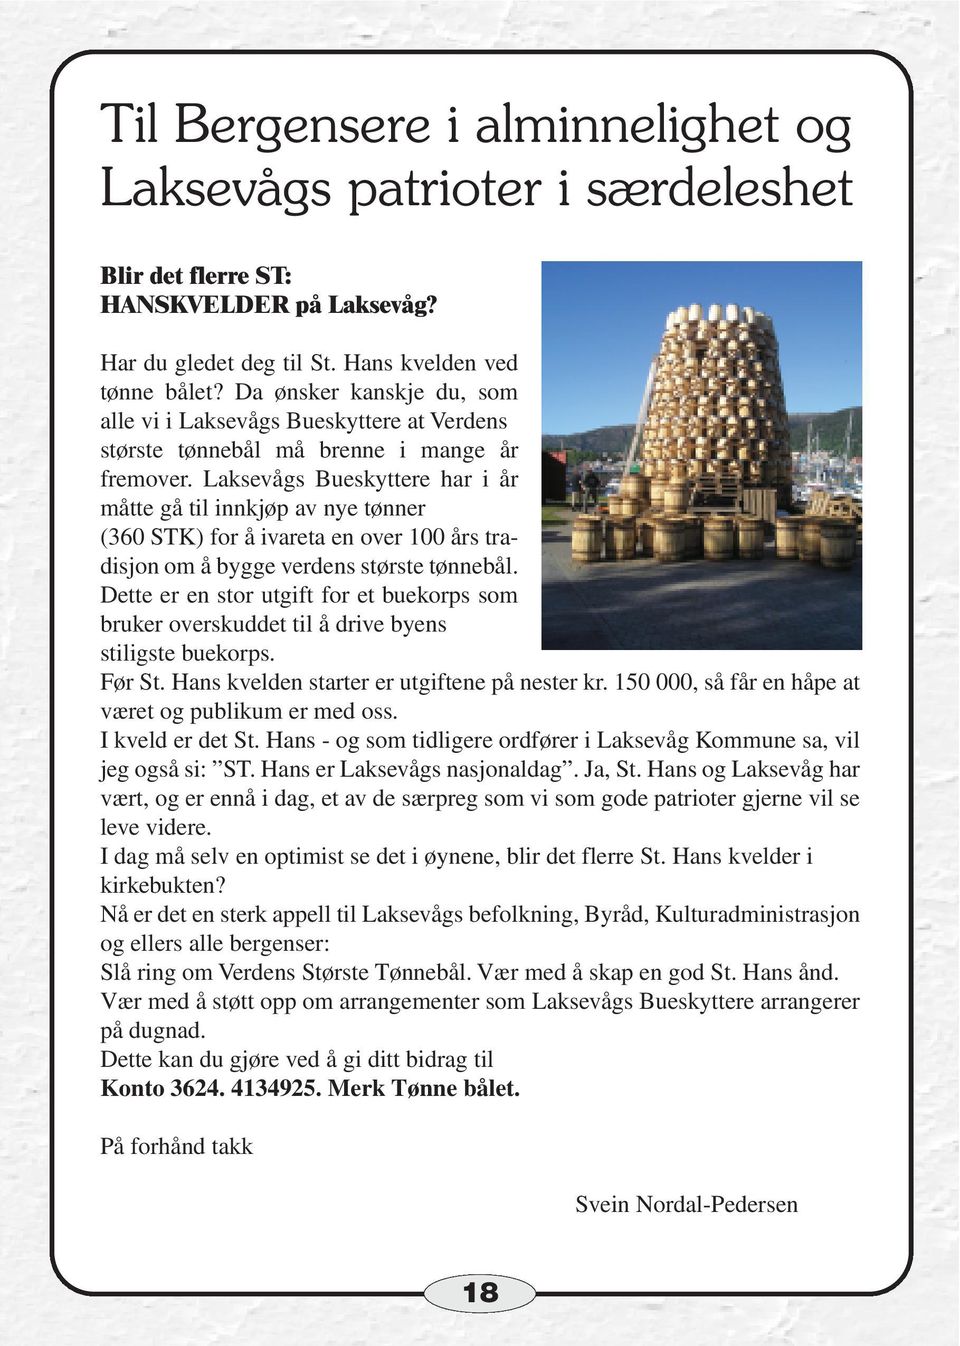 Laksevågs Bueskyttere har i år måtte gå til innkjøp av nye tønner (360 STK) for å ivareta en over 100 års tradisjon om å bygge verdens største tønnebål.